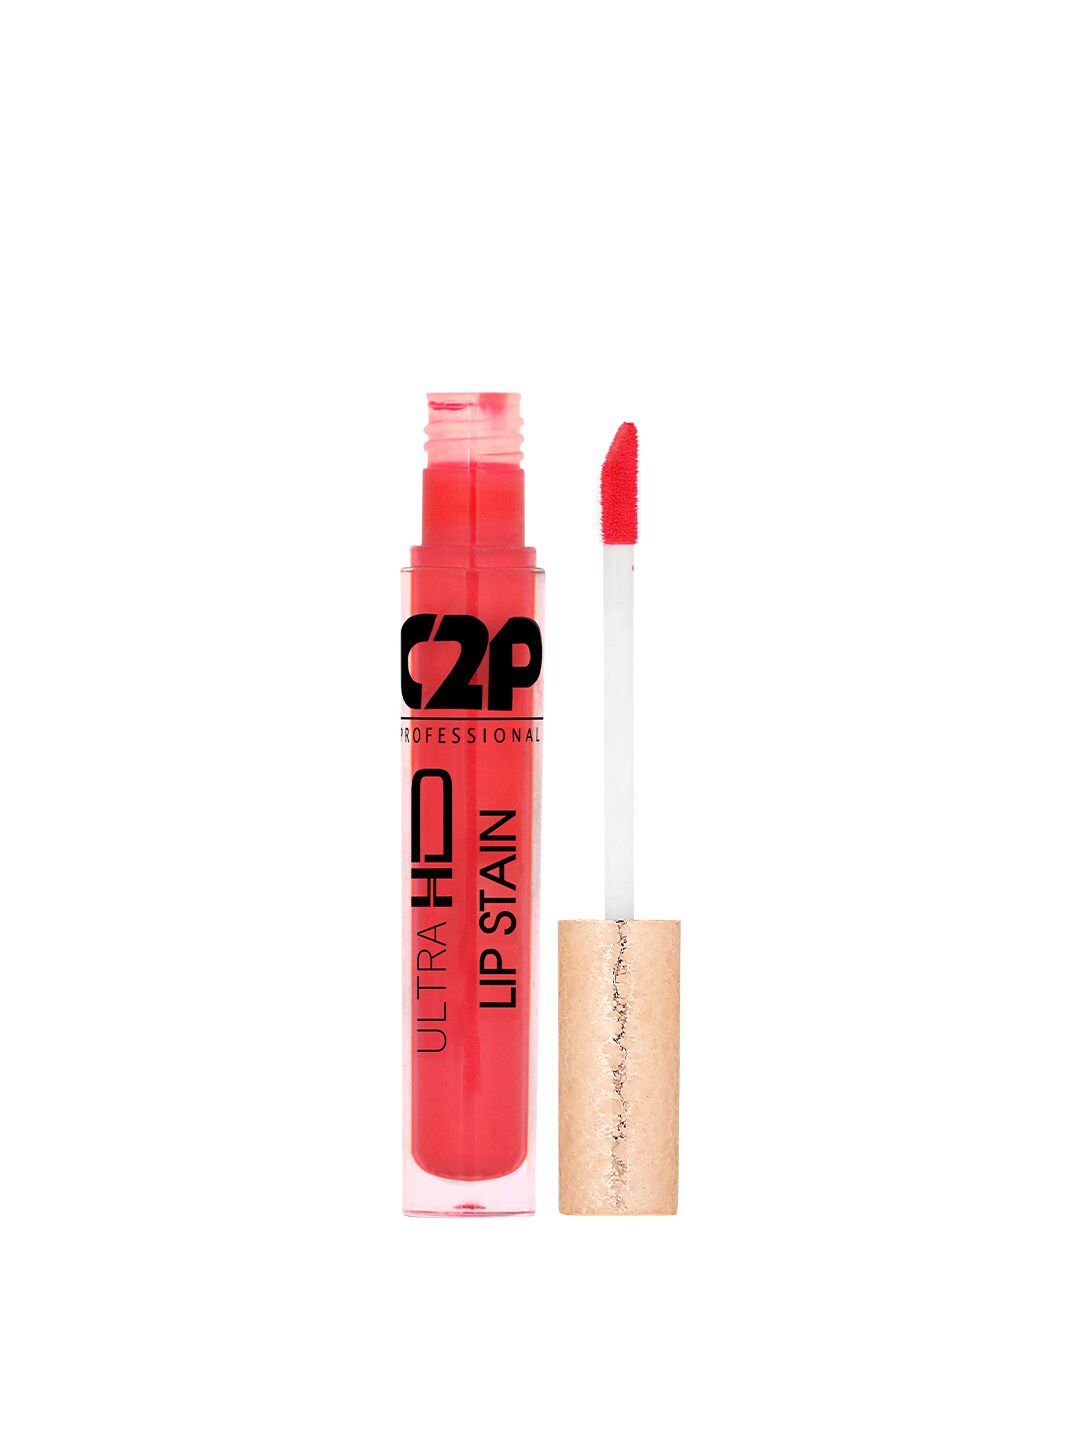 C2P PROFESSIONAL MAKEUP Lip Stain Liquid Lipstick - Red Velvet 12 Price in India